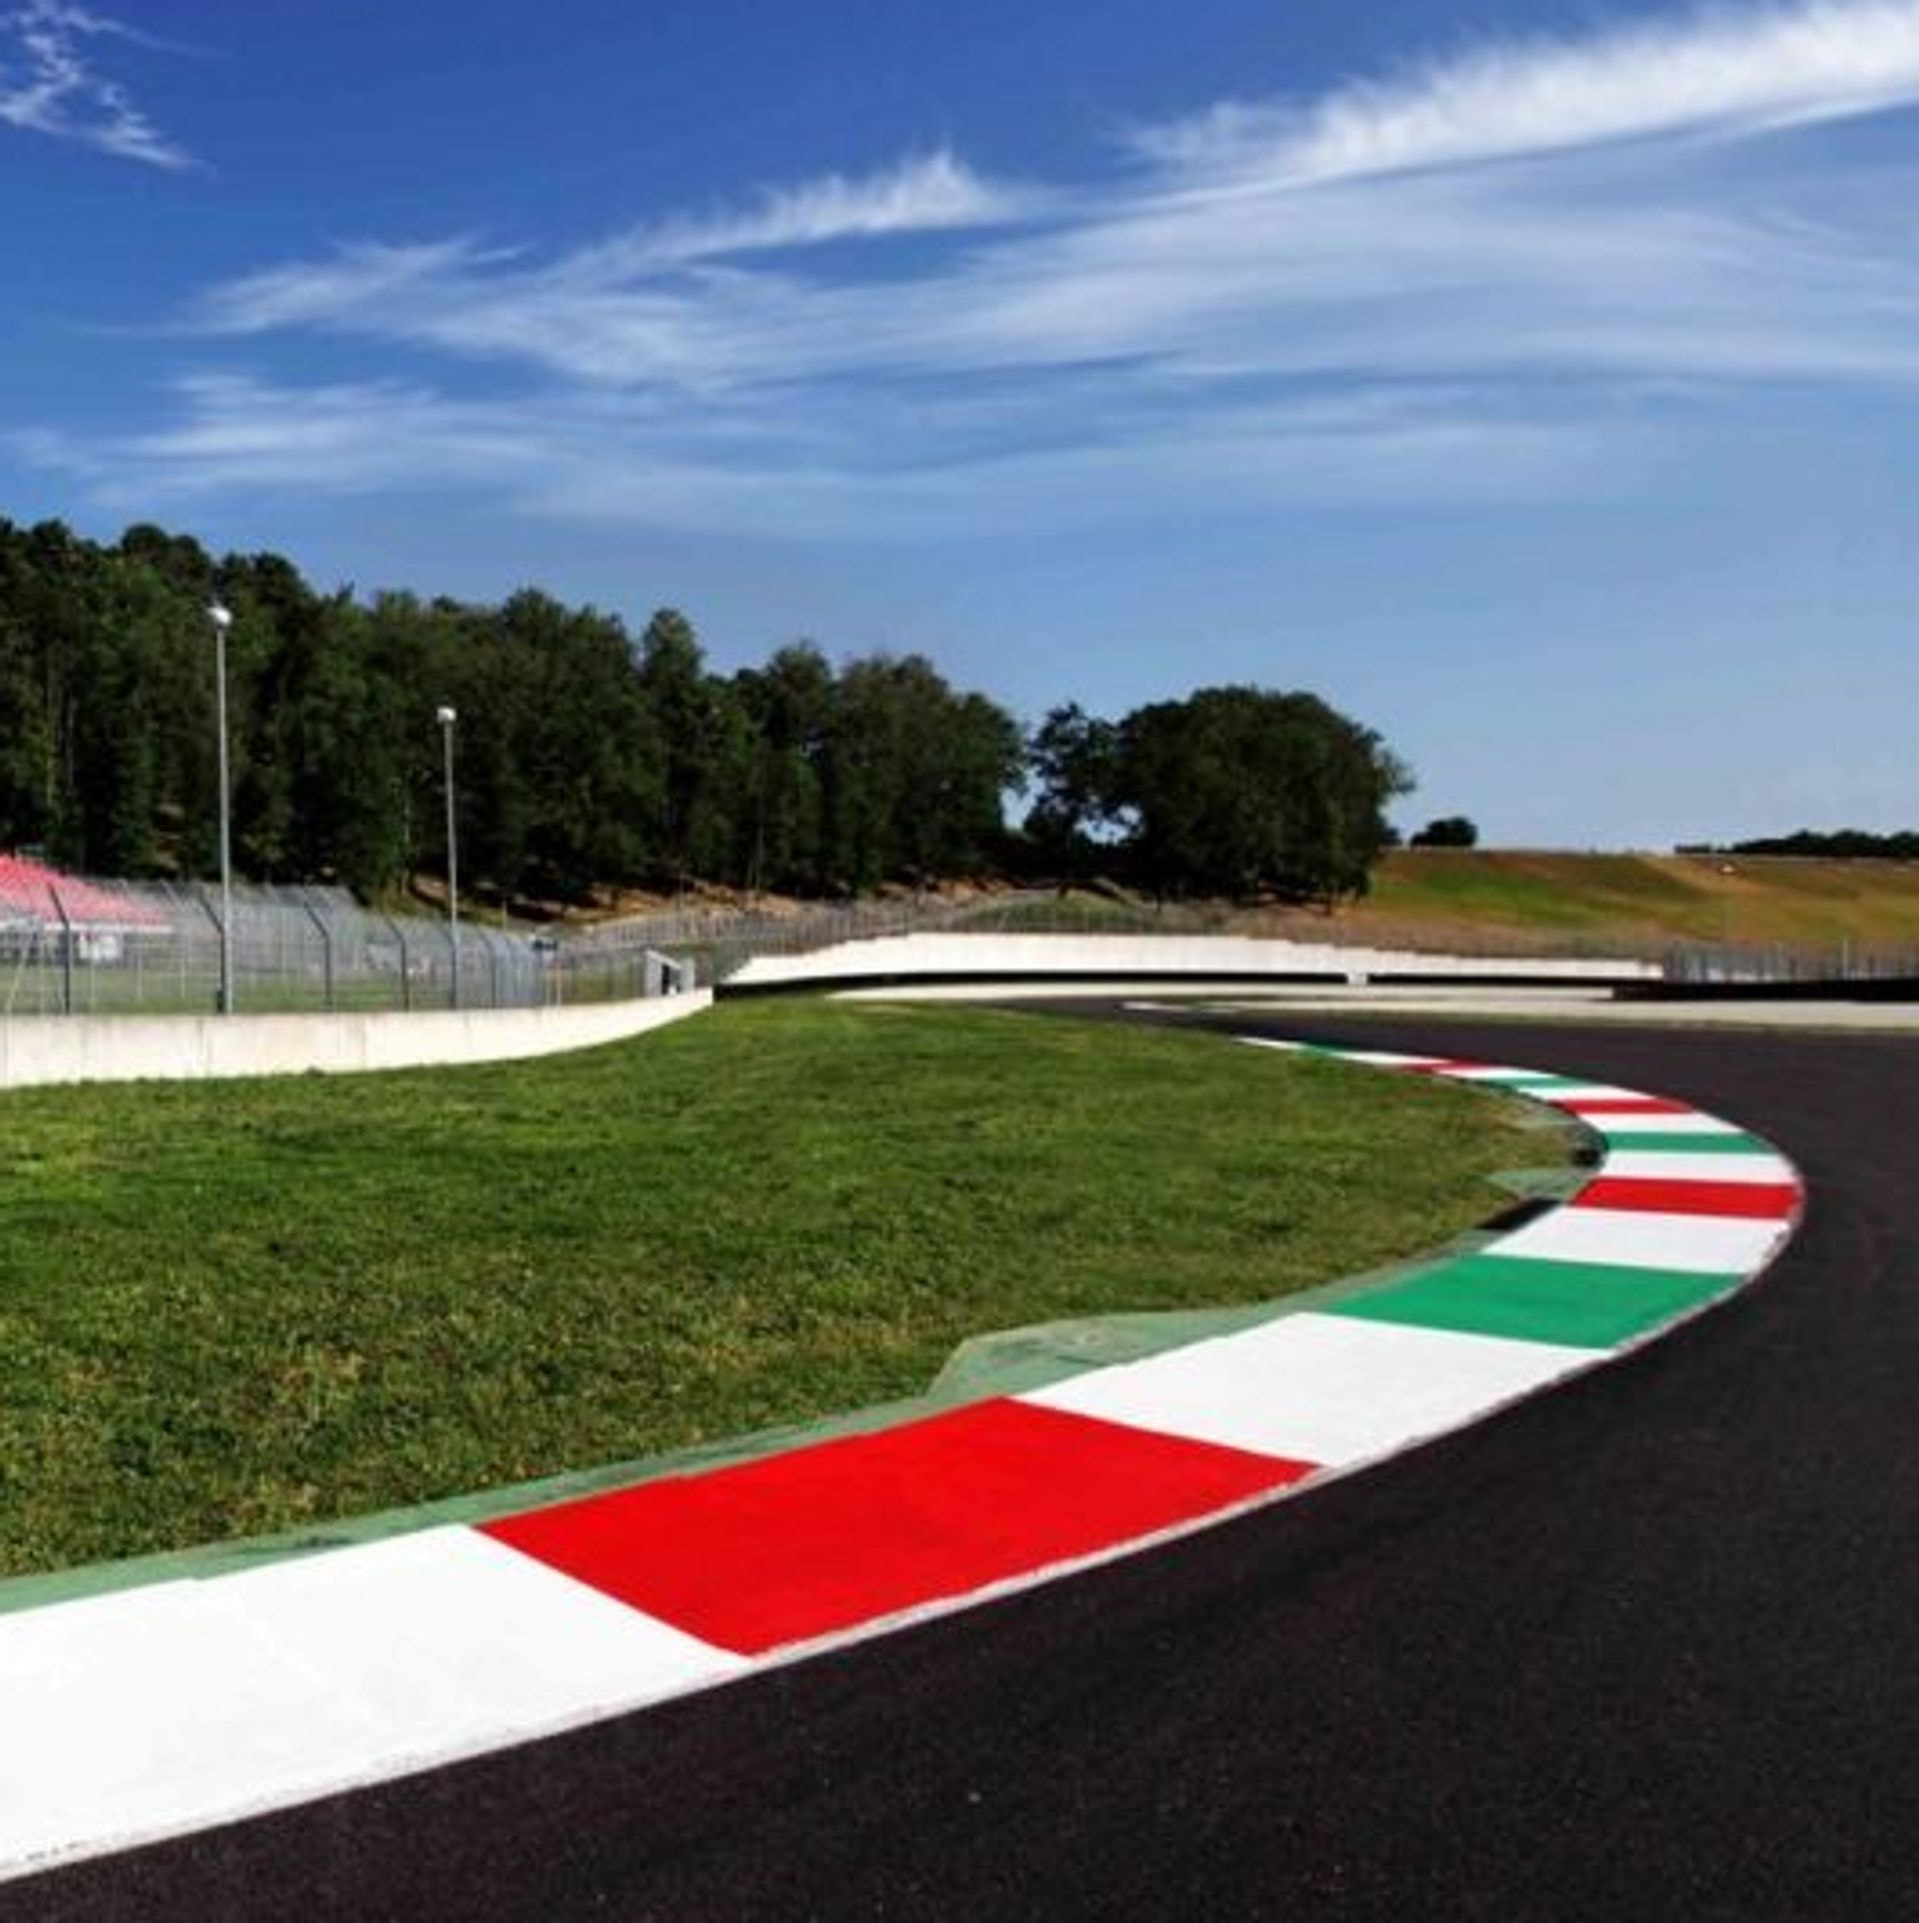 Gran Premio d'Italia